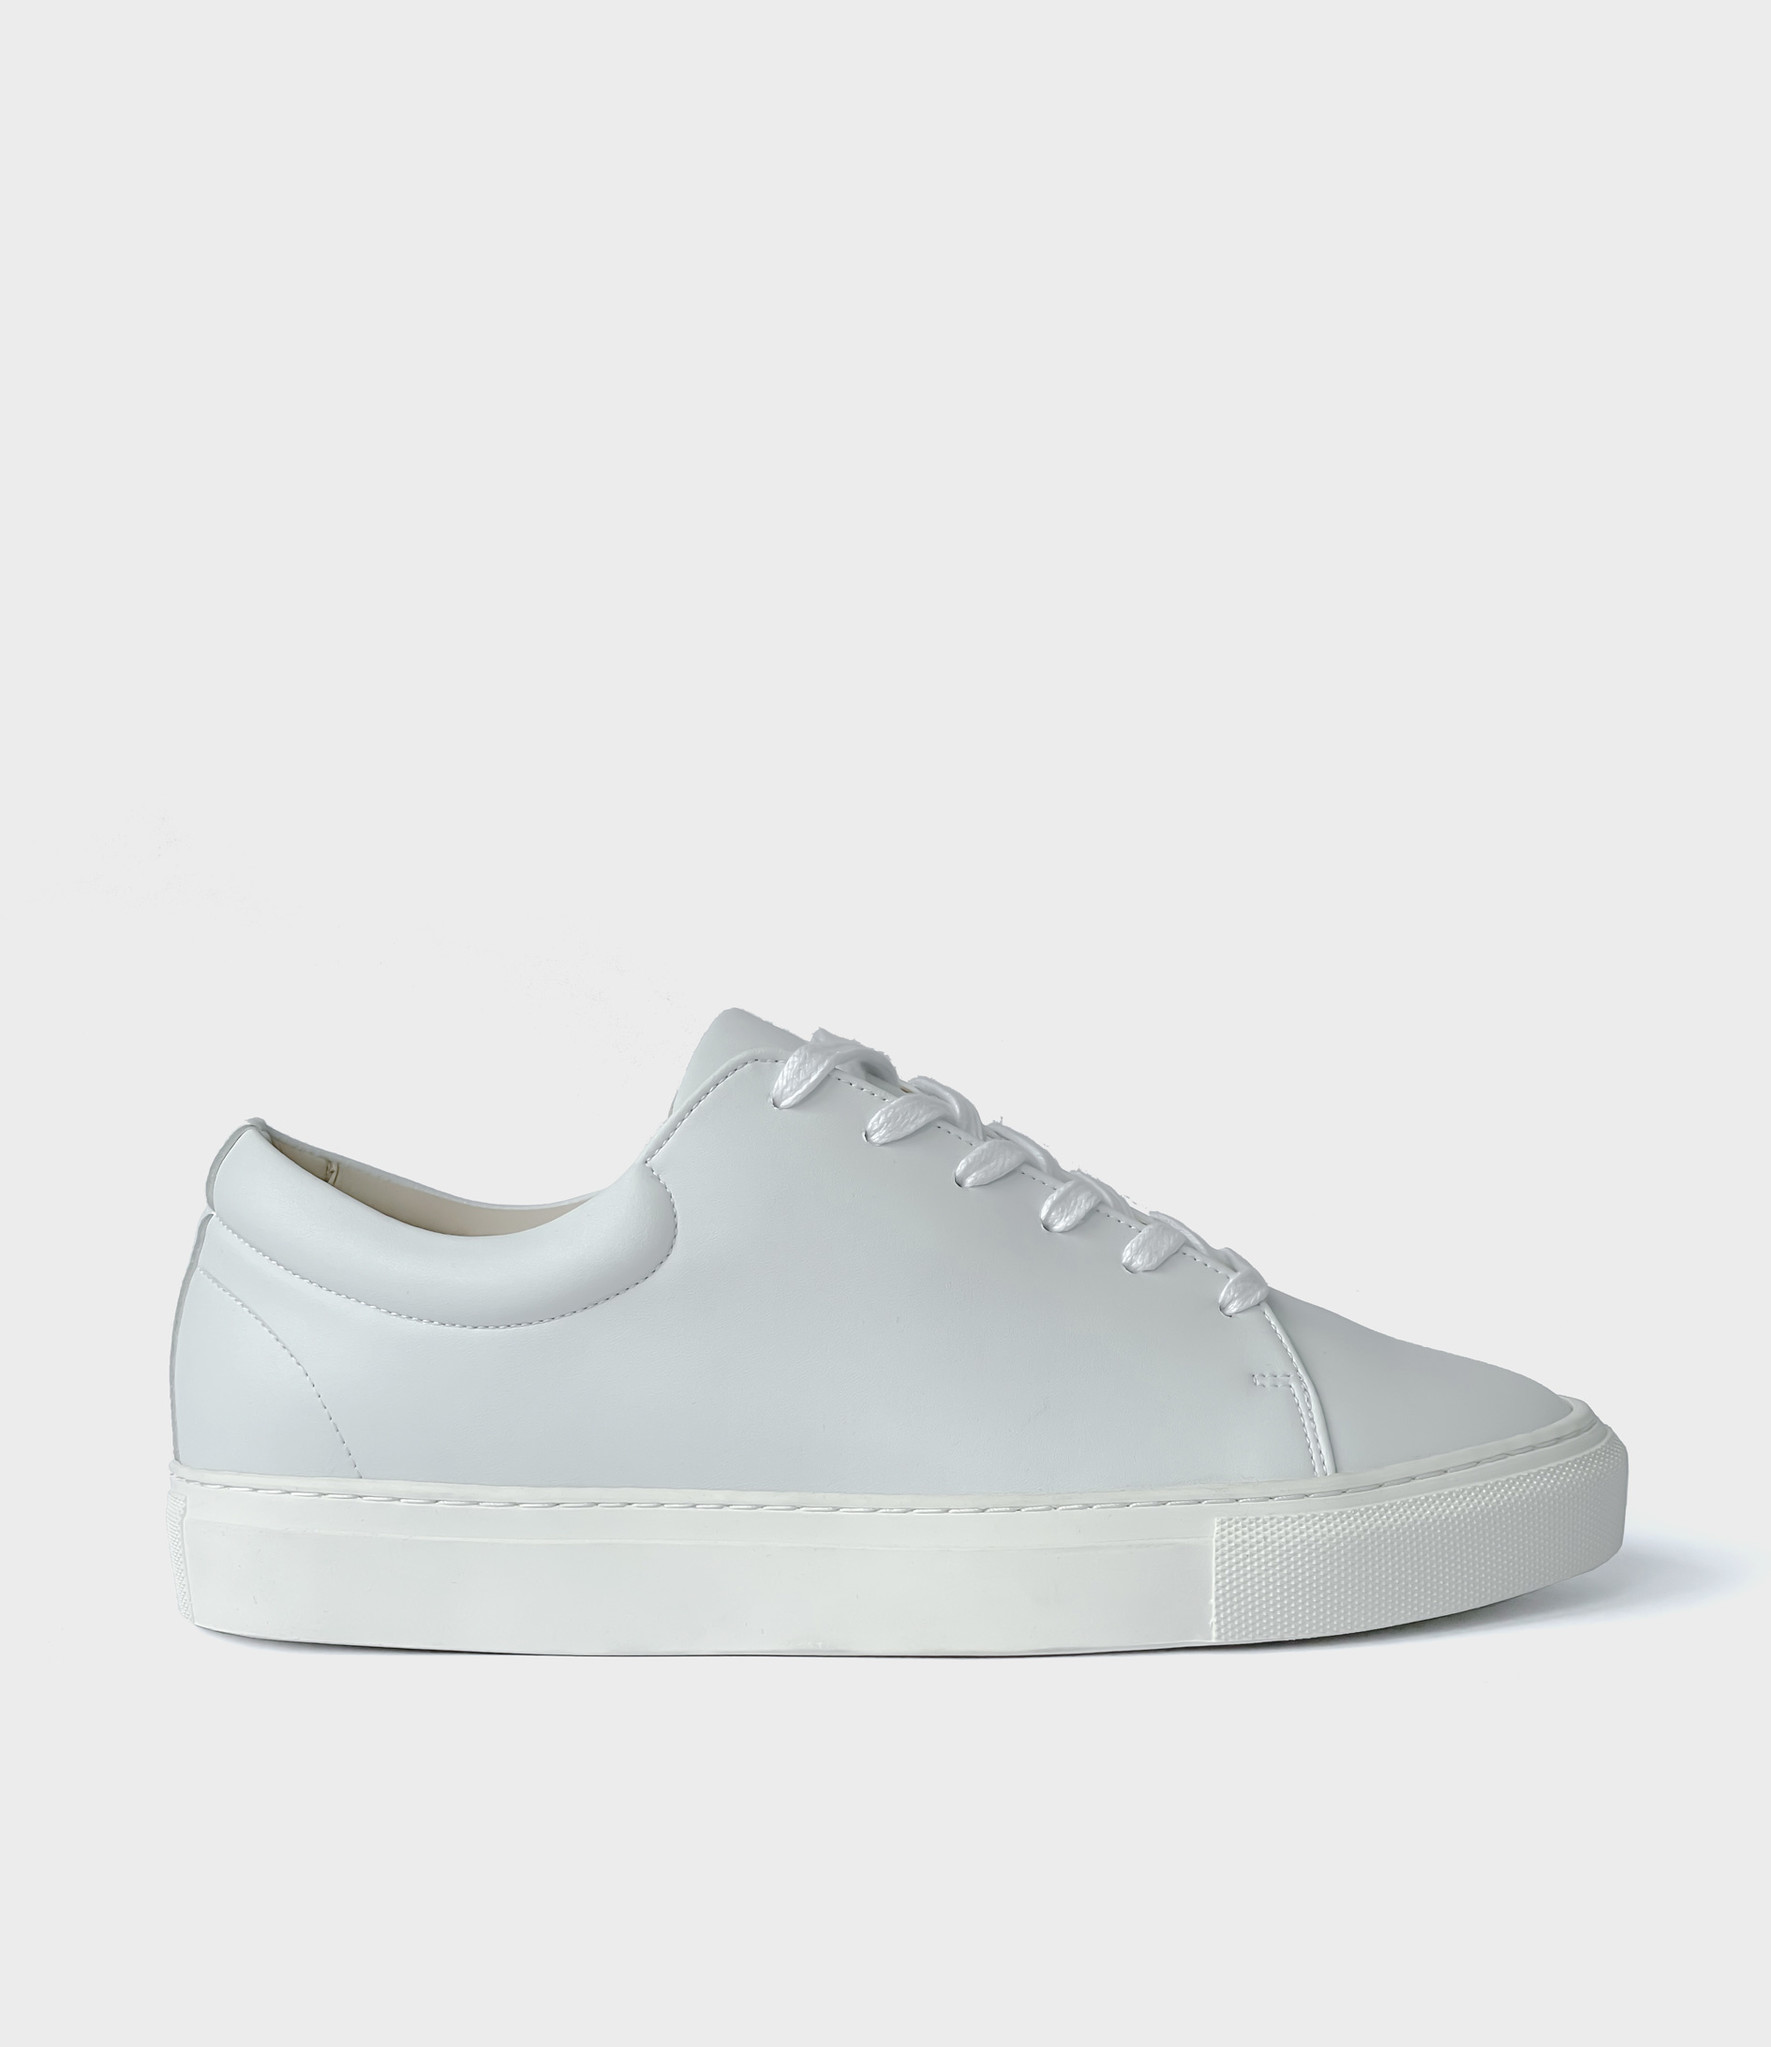 Sydney Brown Sneaker Low - White | Sustainable vegan sneakers - Sneaky ...